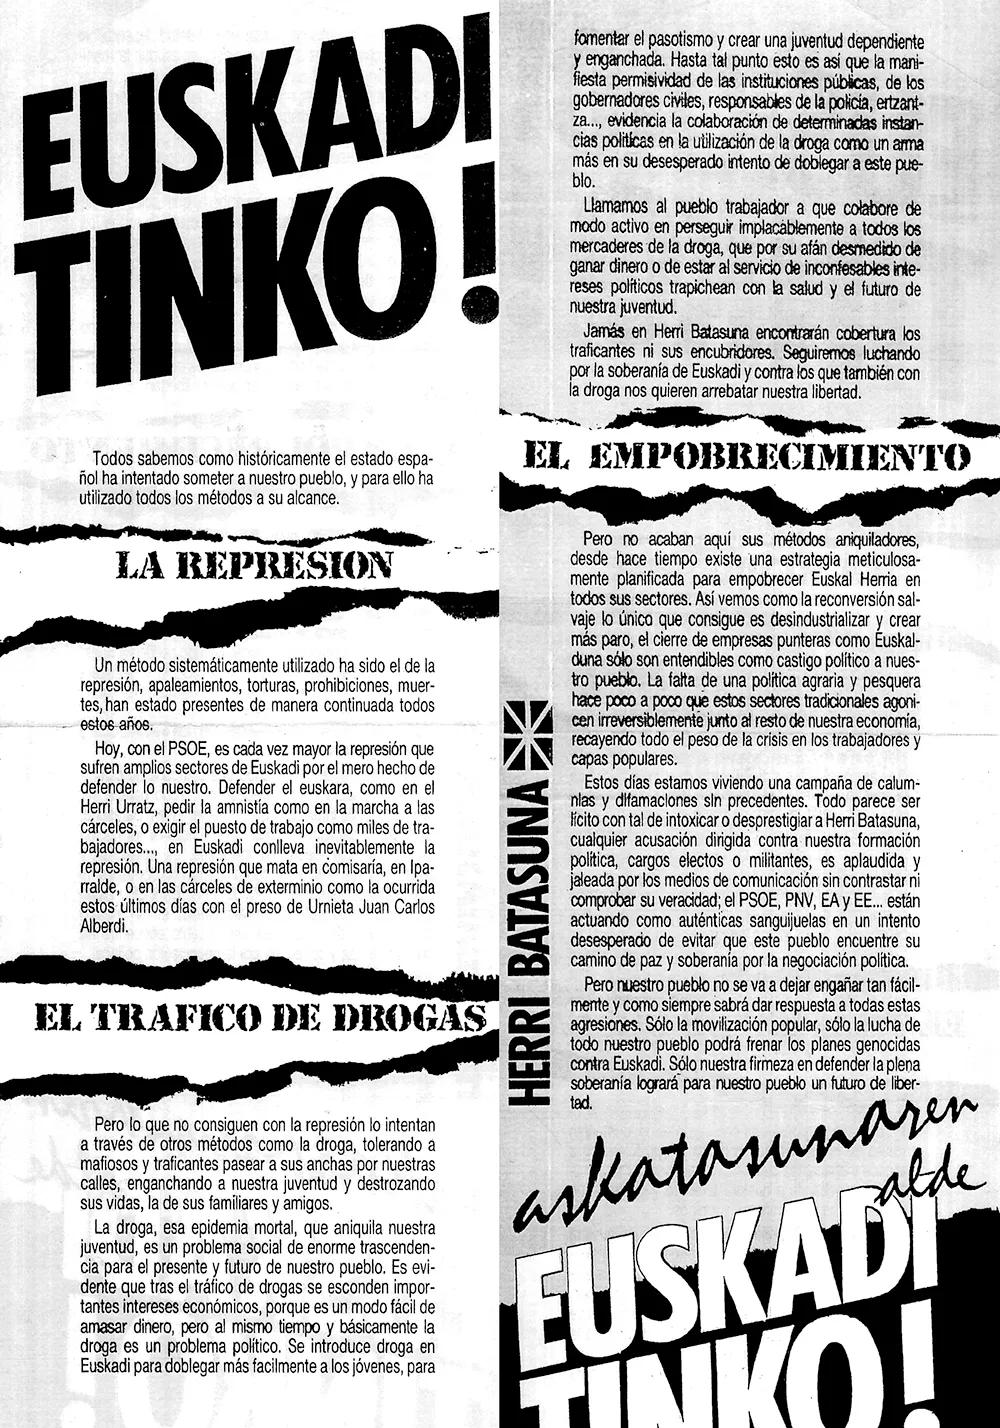 “Se introduce droga en Euskadi para doblegar más fácilmente a los jóvenes, para fomentar el pasotismo y crear una juventud dependiente y enganchada”, folleto de Herri Batasuna de verano de 1988.